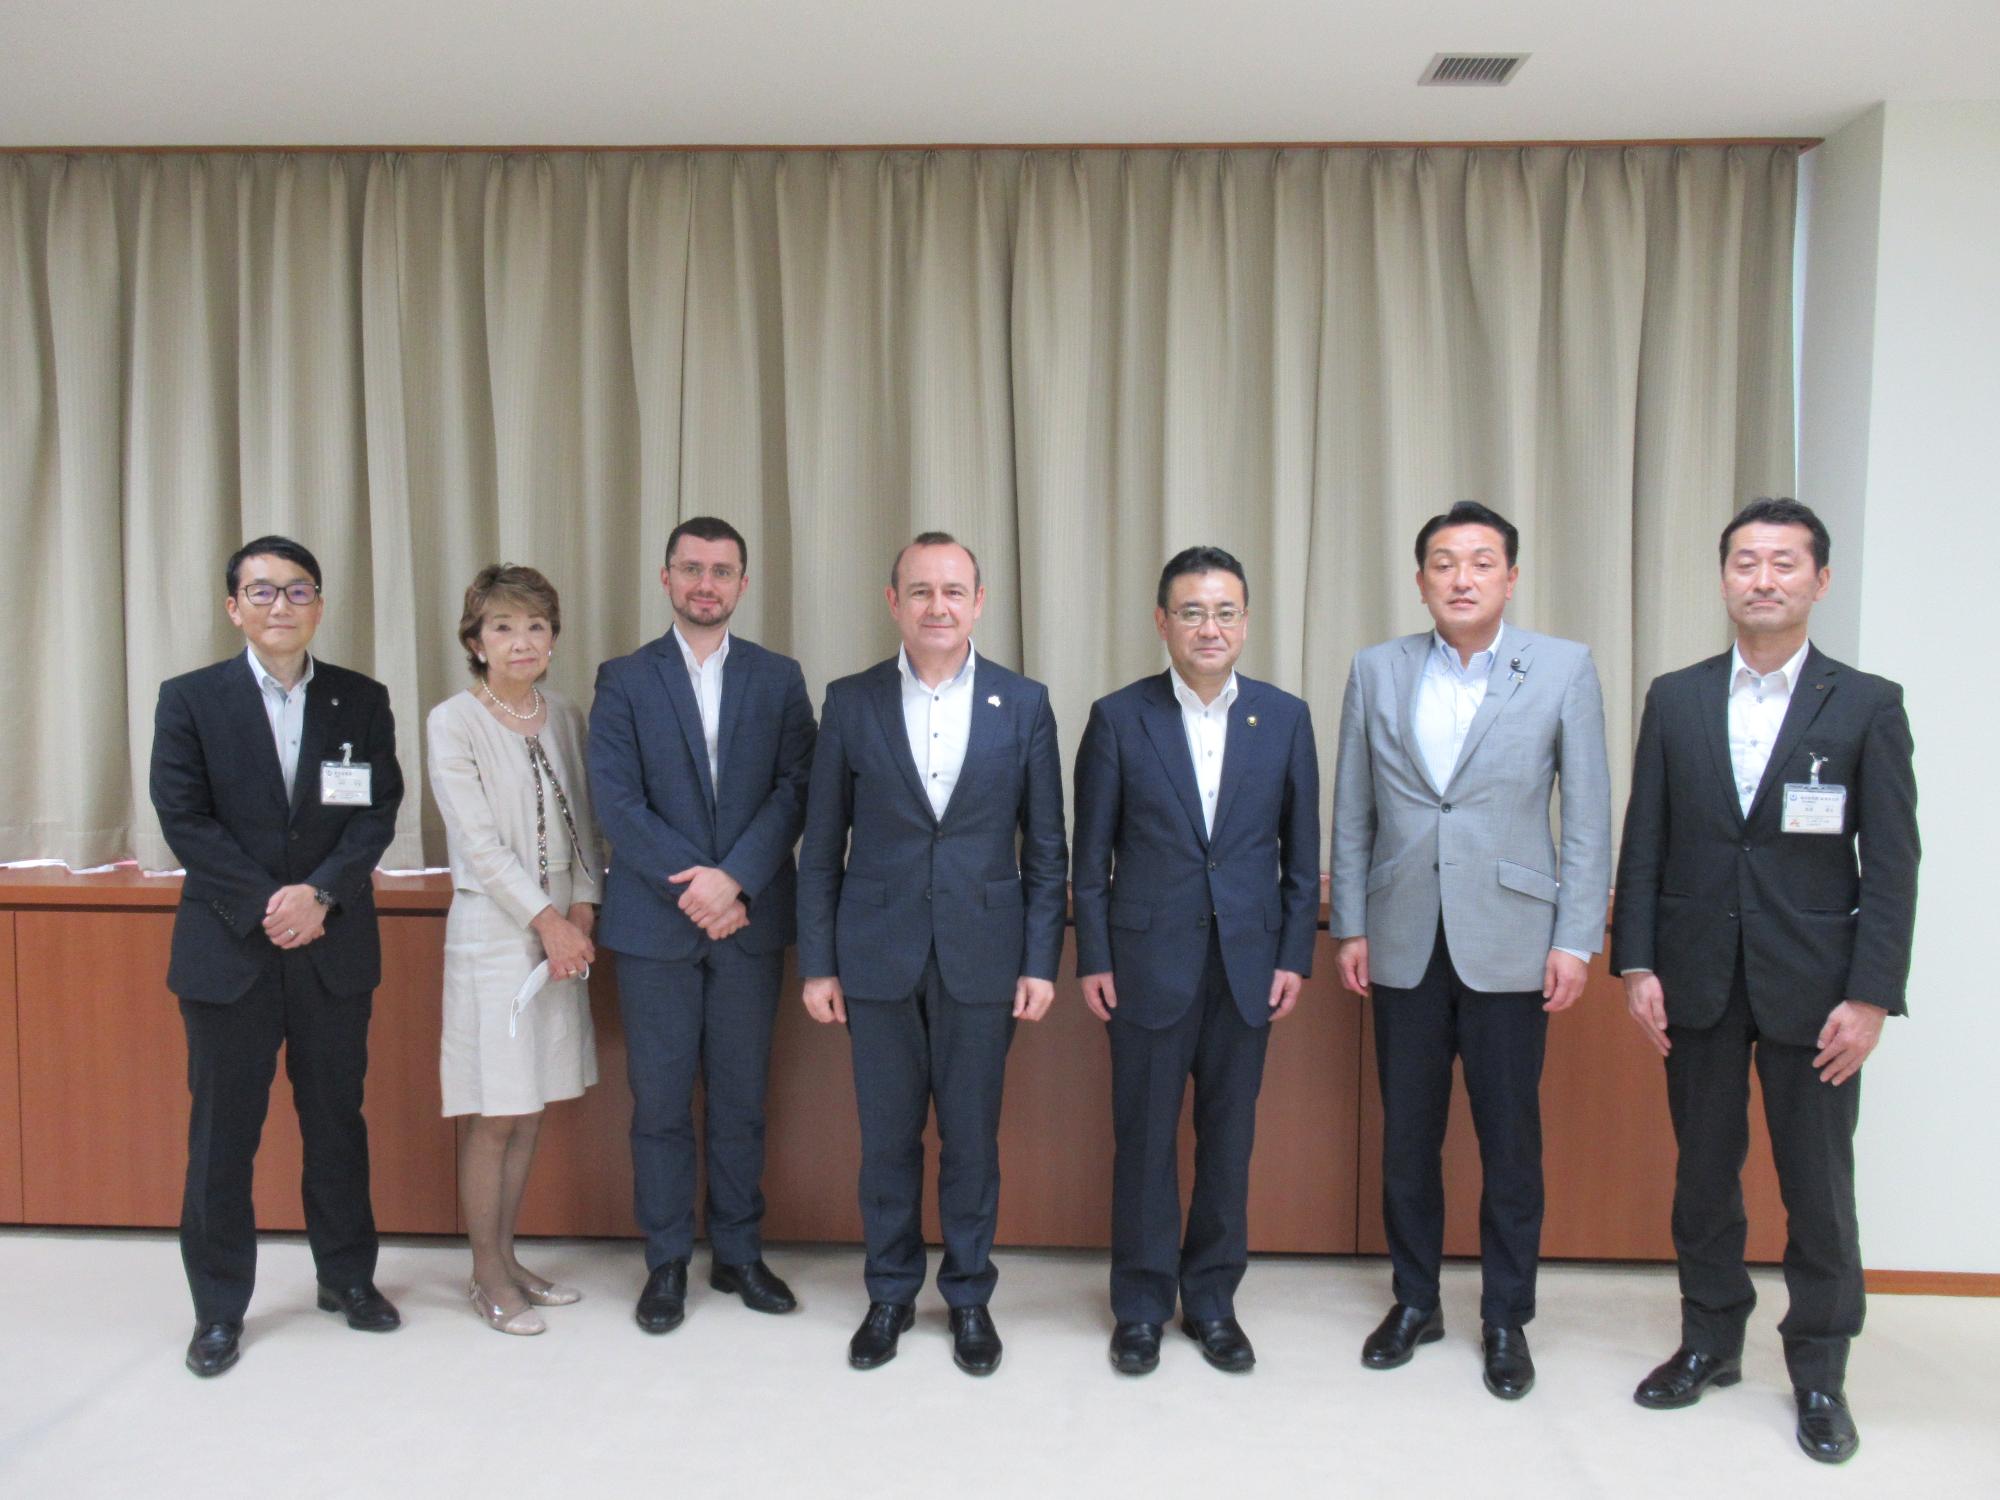 ソコラン大使閣下と熊谷市長を囲んでの集合写真